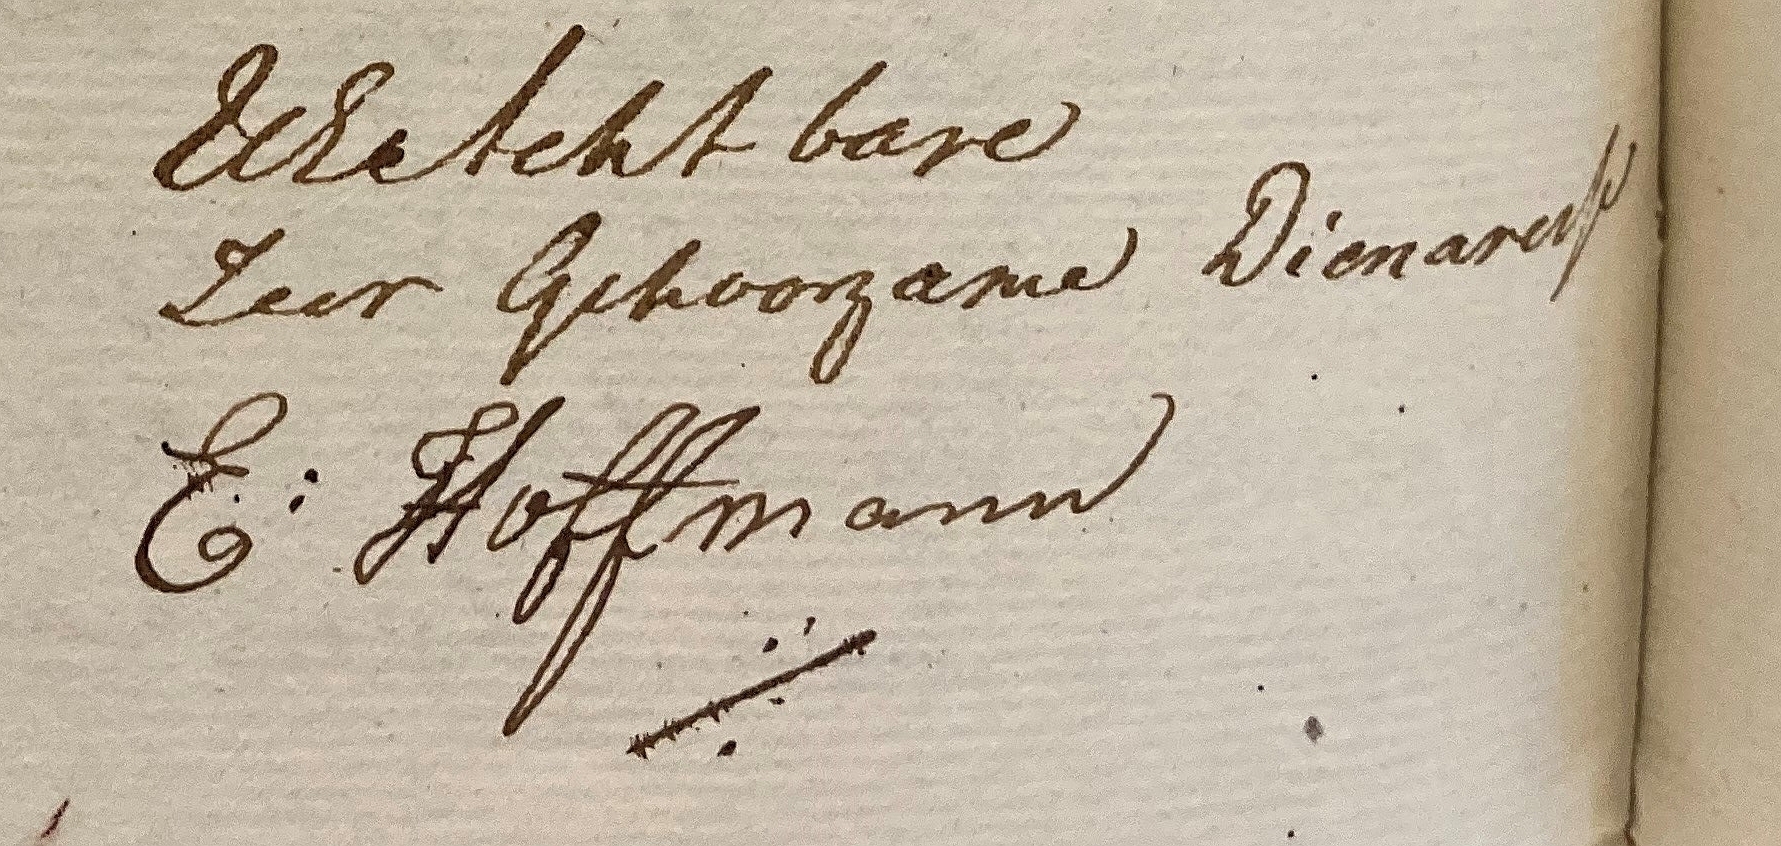 De handtekening van Elizabeth Hoffmann.